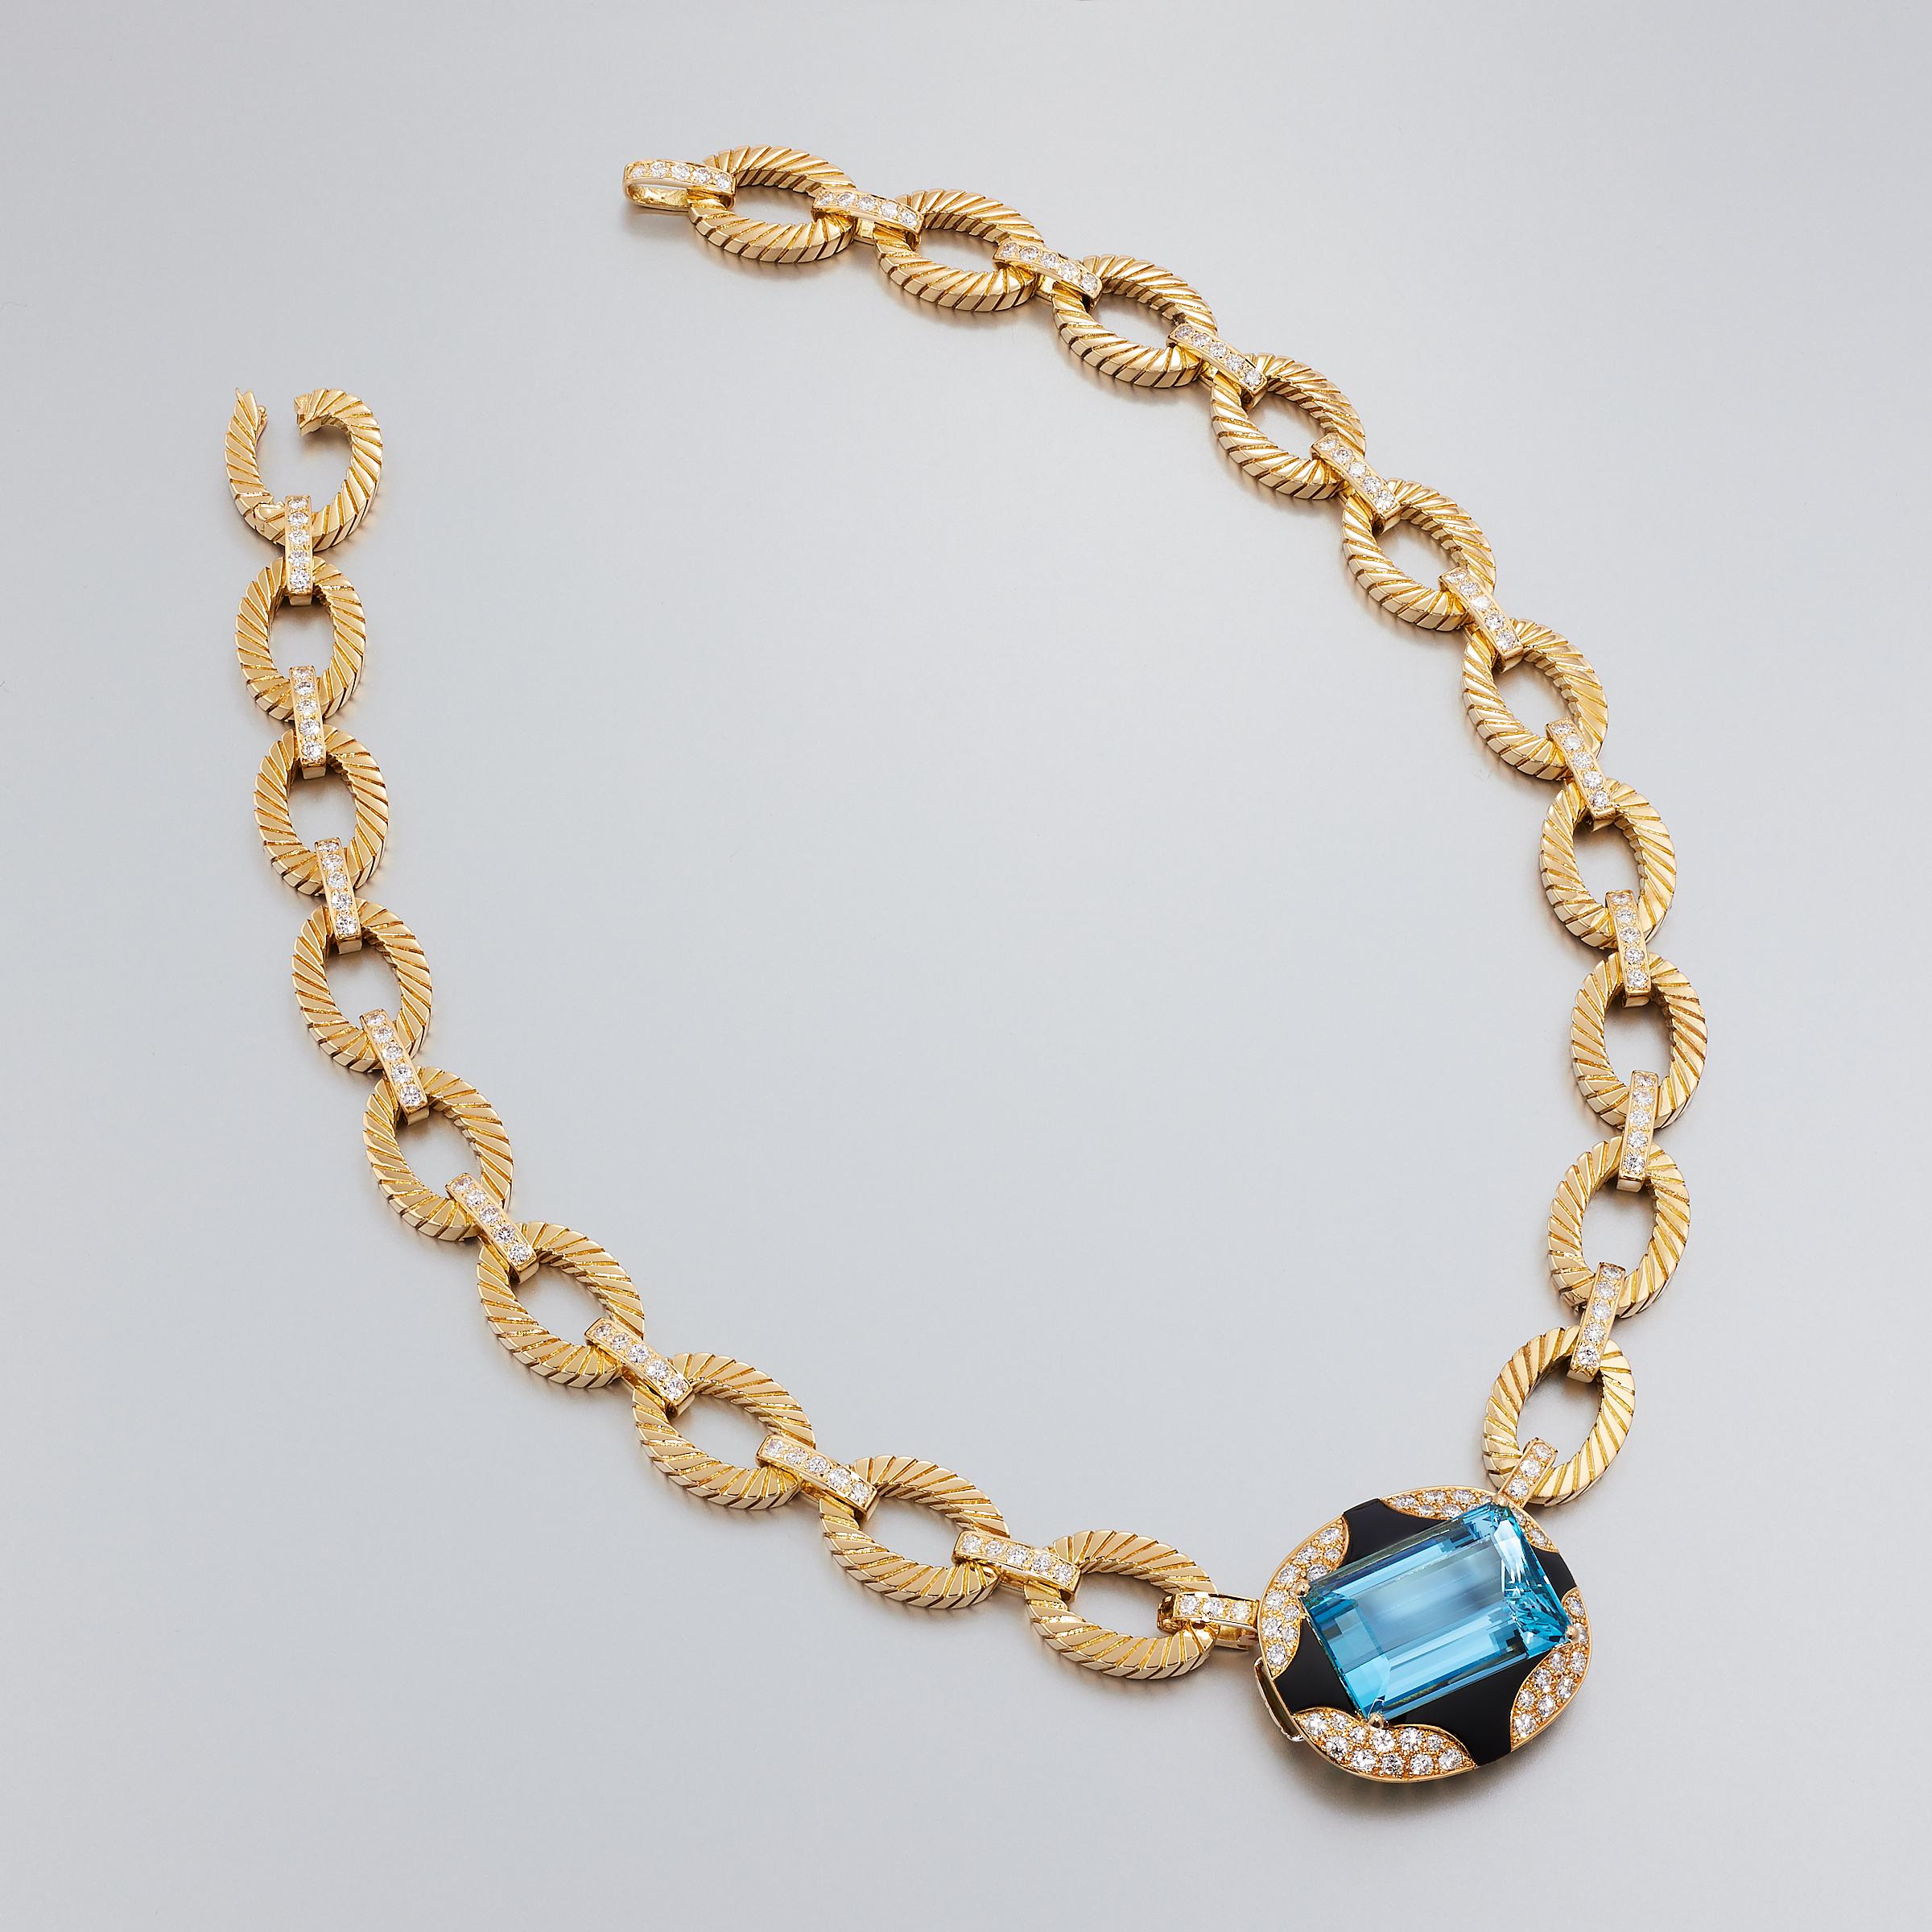 Exceptionnel collier unique en son genre composé d'aigue-marine, de diamants et d'onyx noir, attribué à Mauboussin Paris et serti dans de l'or jaune 18 carats. Ce collier impressionnant est une création vintage datant des années 1980 et est